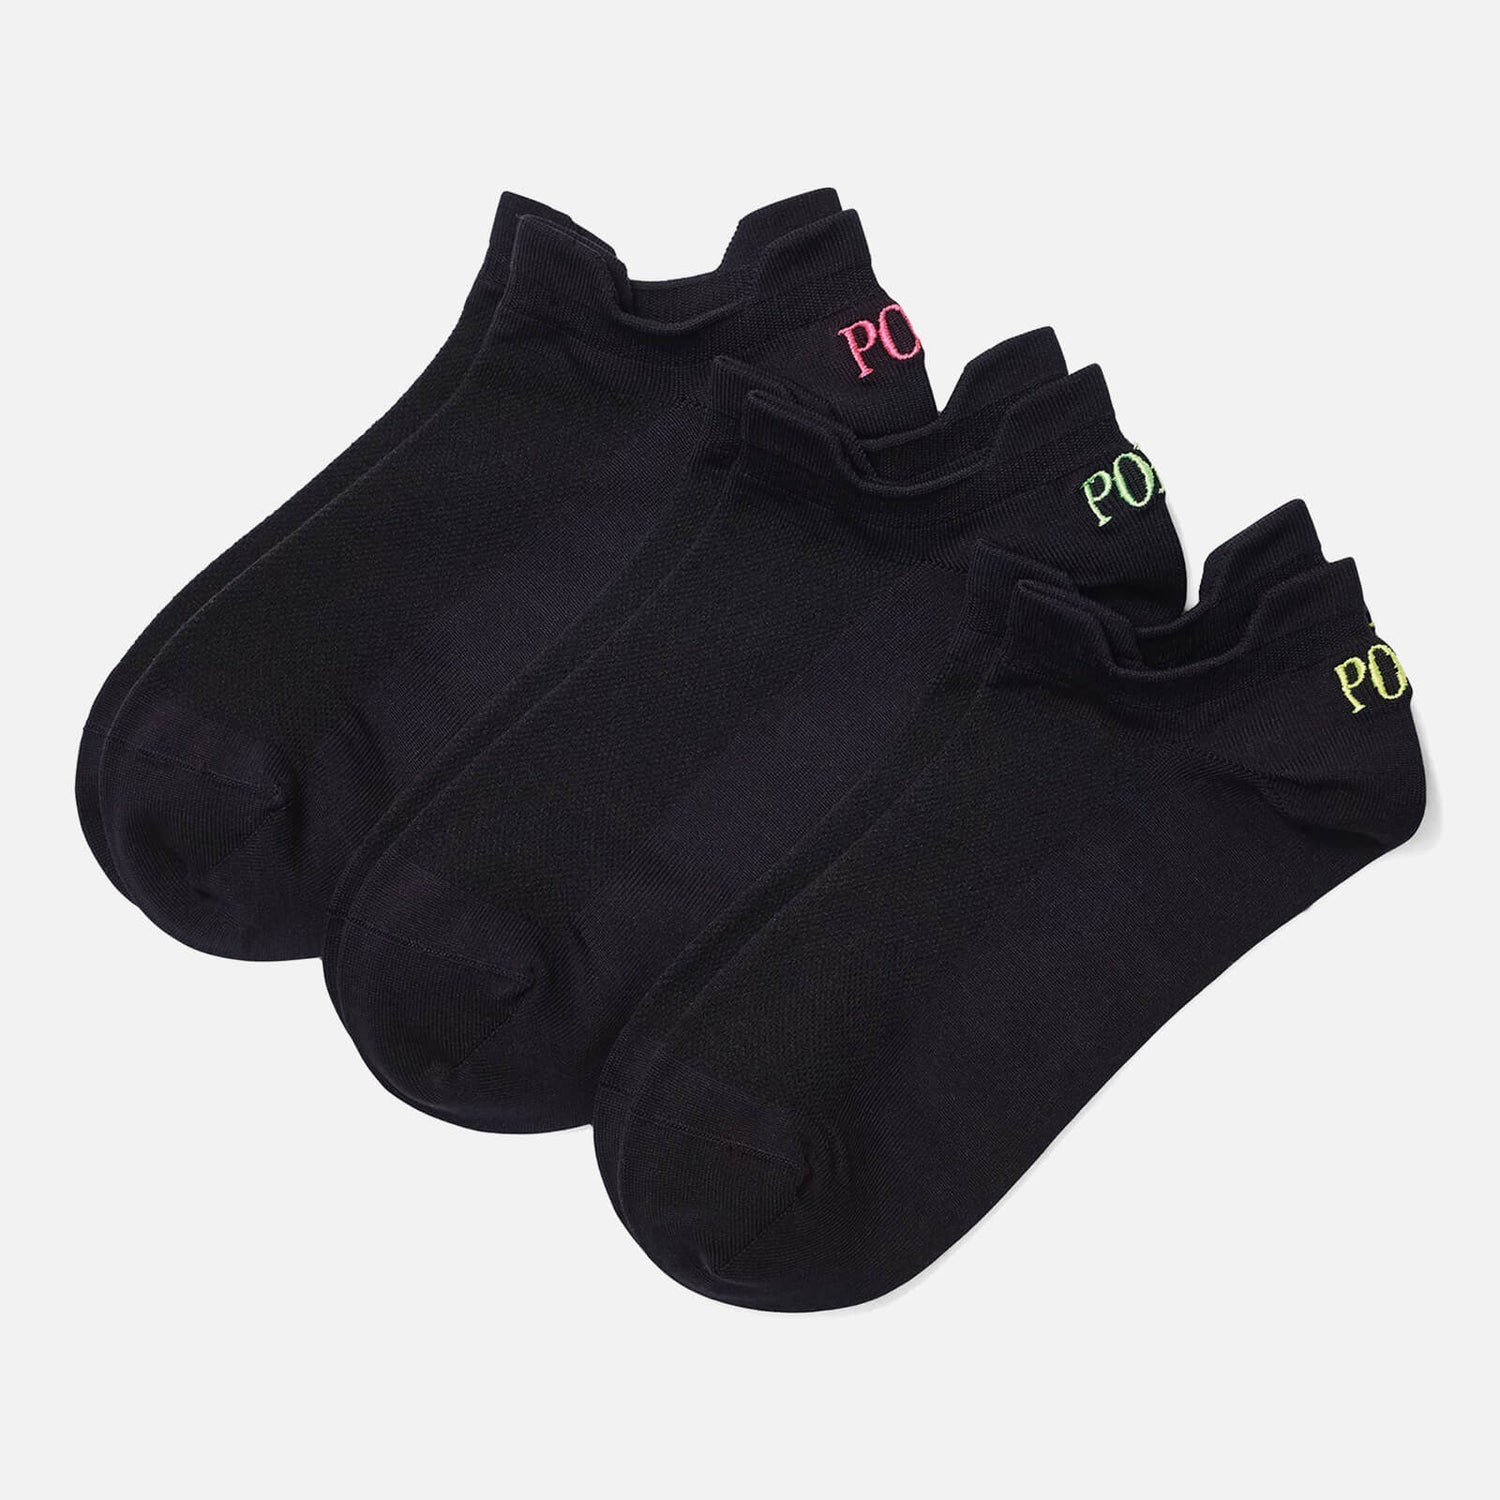 Polo Ralph Lauren Women's Double Tab Socks 3 Pack - Black